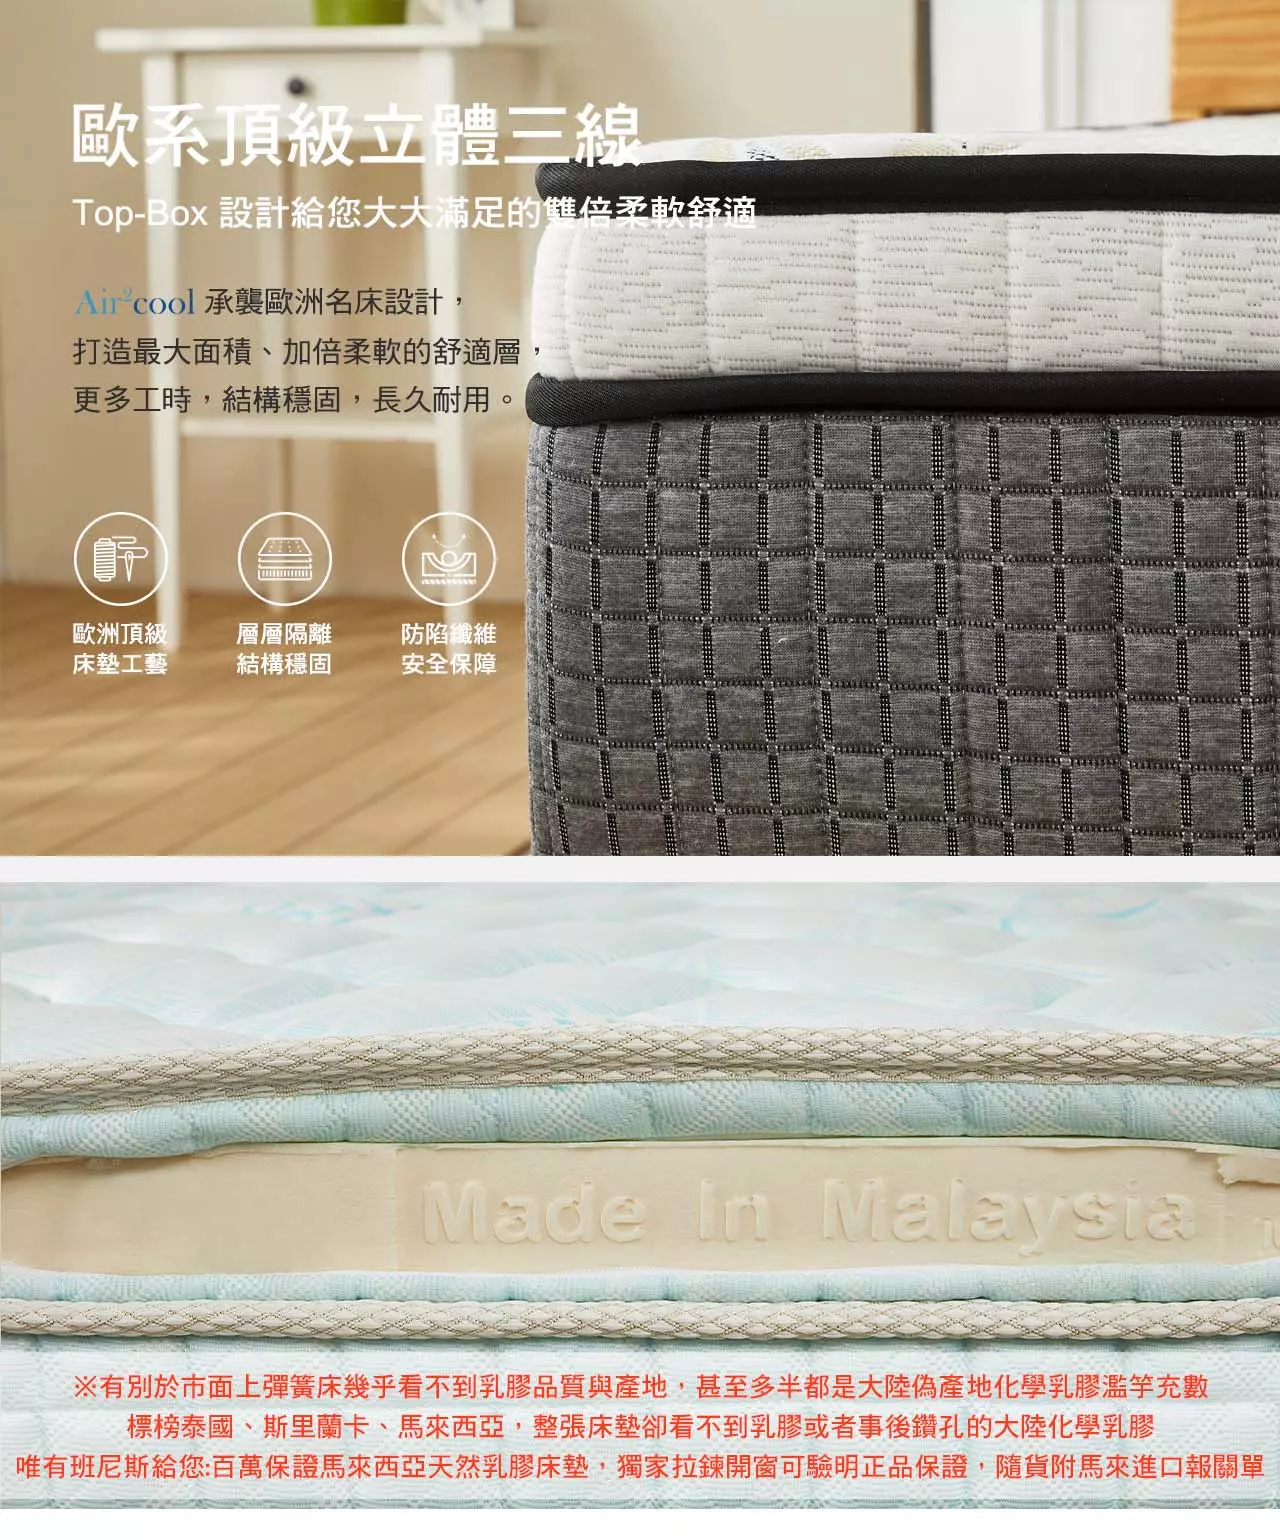 歐系頂級床墊車工，Top-Box 給您大大滿足的雙倍柔軟舒適：打造最大面積、加倍柔軟的舒適層，更多工時，結構穩固，長久耐用。側邊雙拉鍊開窗：可見天然乳膠與EPE支撐透氣結構；側邊採用透氣布料；歐系手工高級床墊設計，提昇16.8%舒適層面積與體感